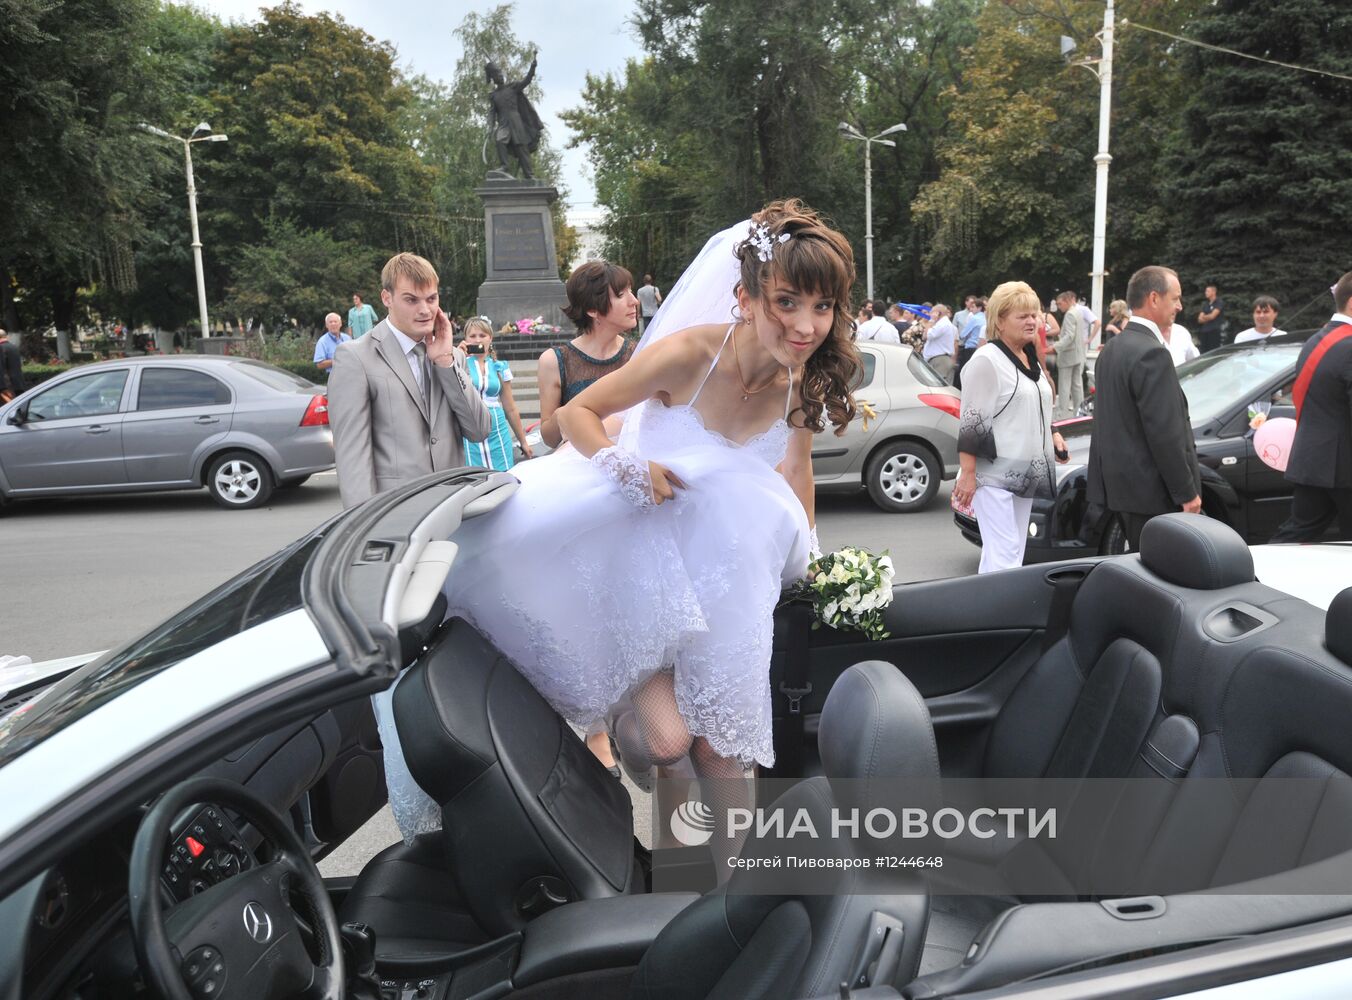 Свадьба паралимпийцев Елены Ивановой и Владимира Свиридова